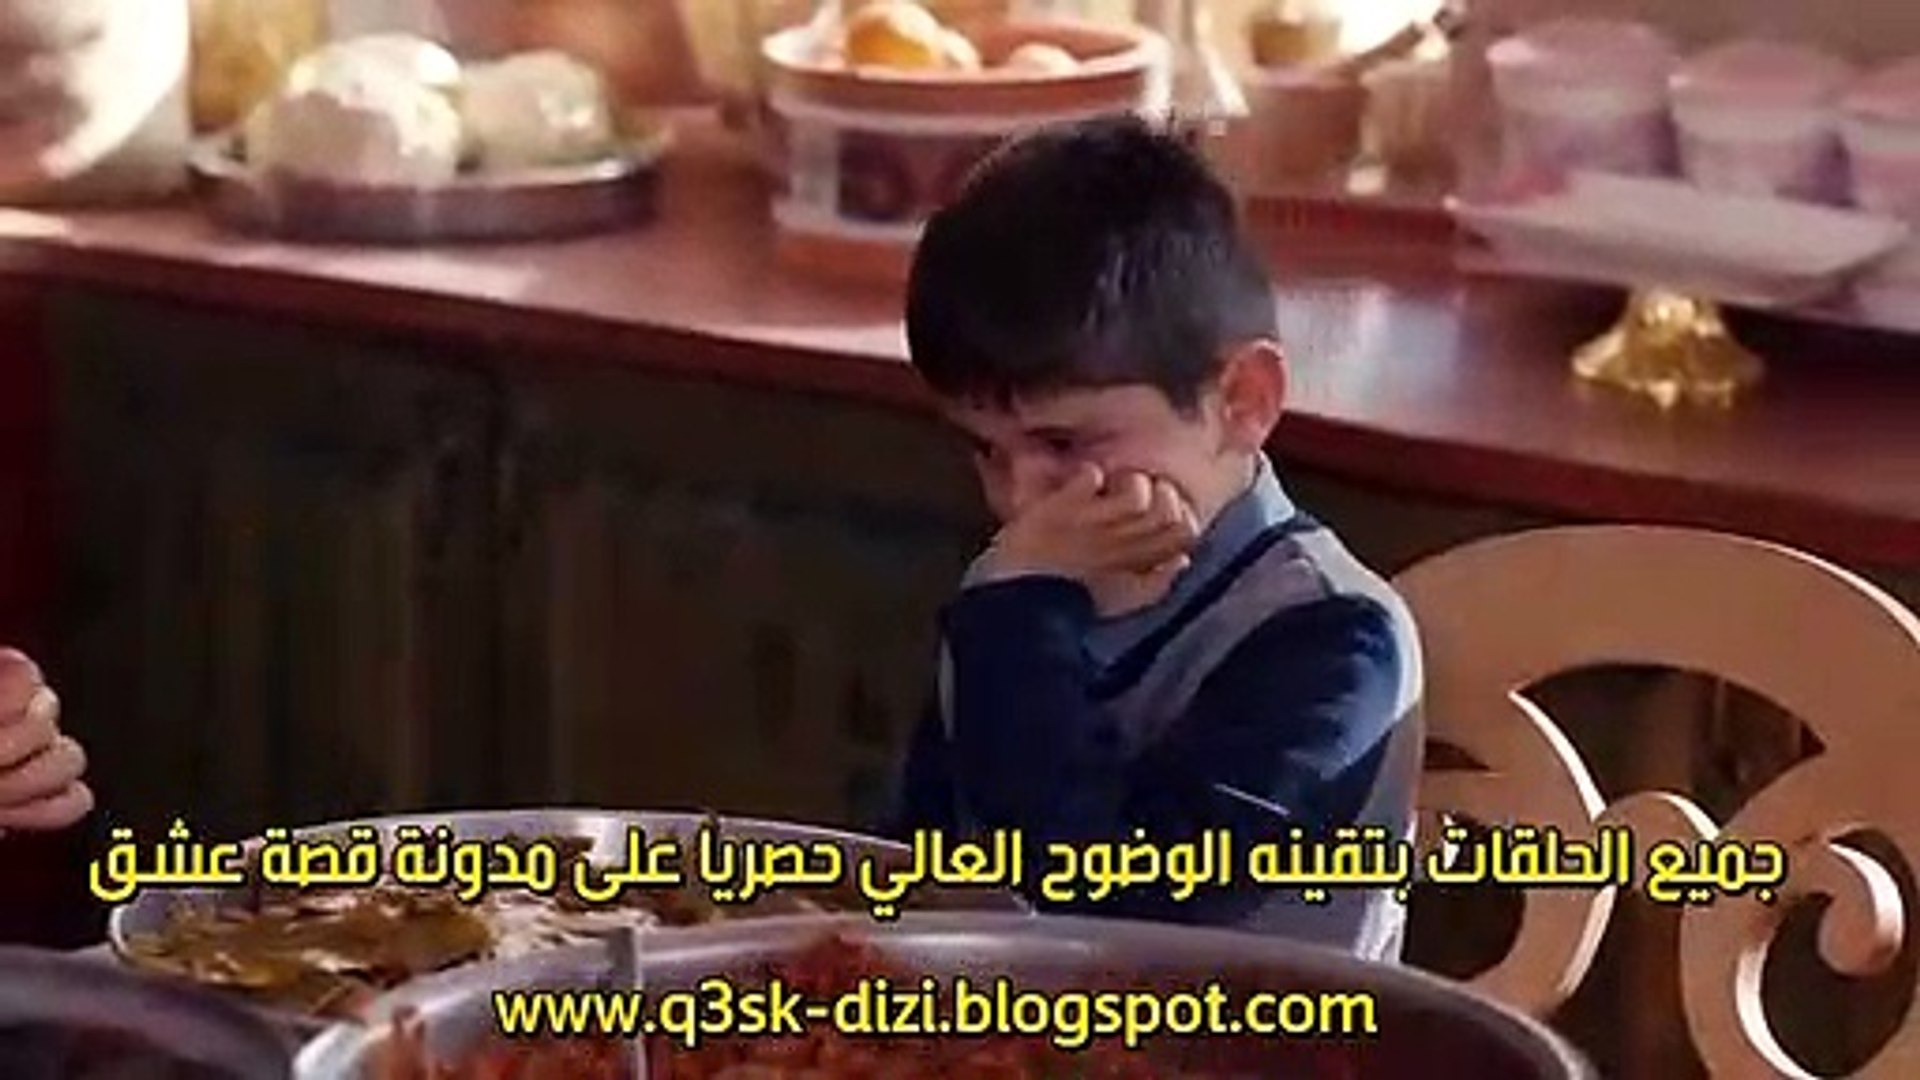 مسلسل العروس الجديدة الحلقة 2 القسم 2 مترجم للعربية فيديو Dailymotion